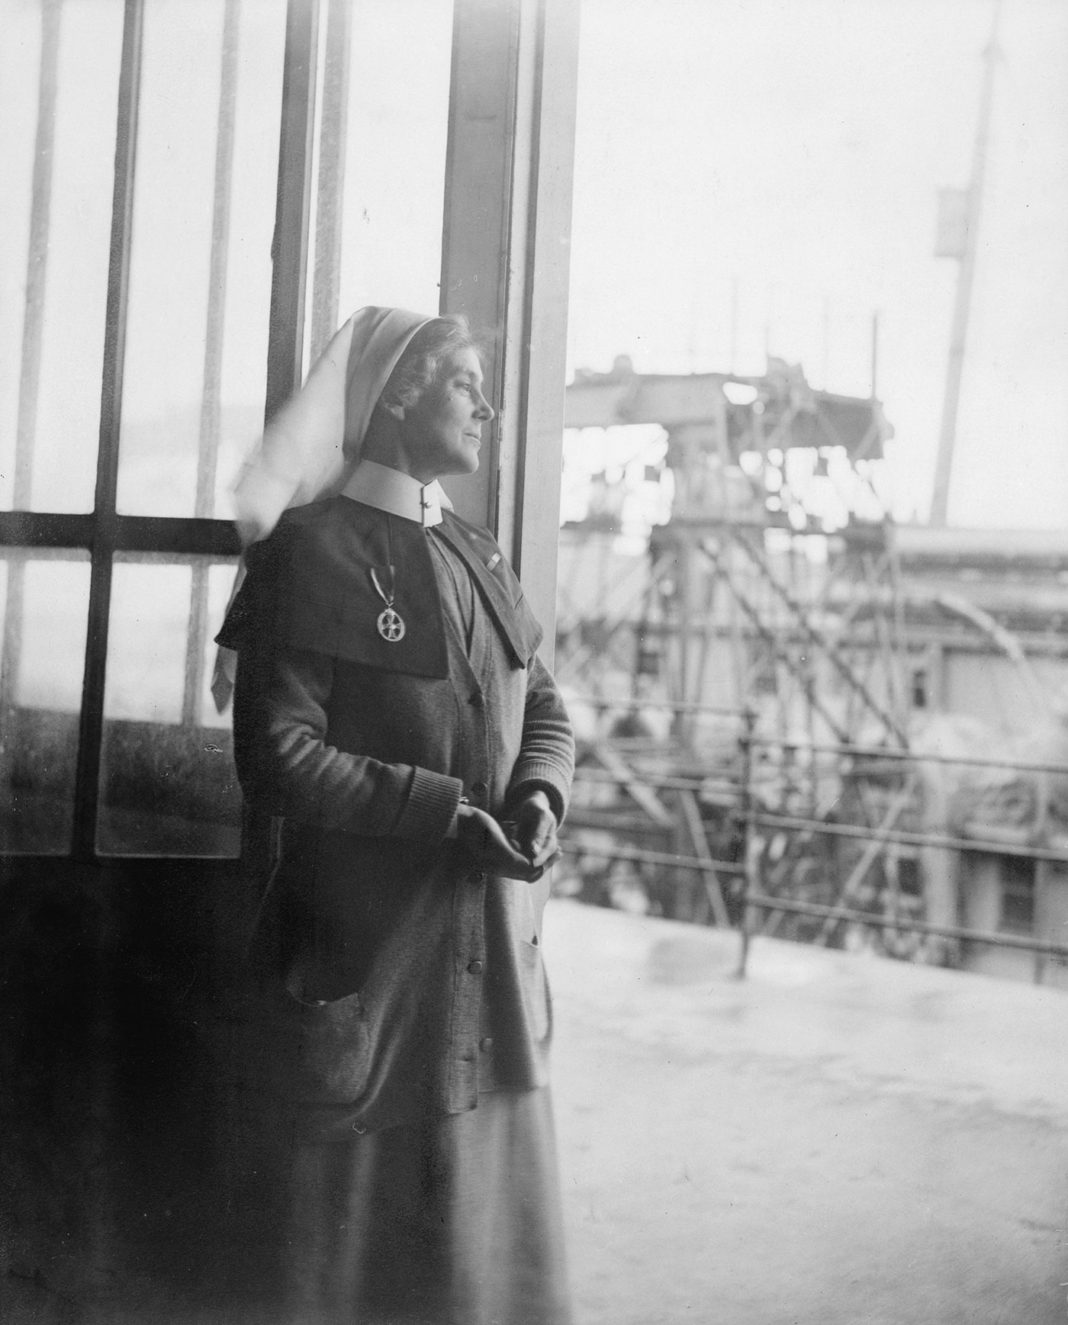 Олив Эдис, «Мисс Миннс, Императорская служба медсестер королевы Александры (QAIMNS), заведующая госпиталем на набережной в Гавре, Франция» (1919) (© IWM (Q8051))